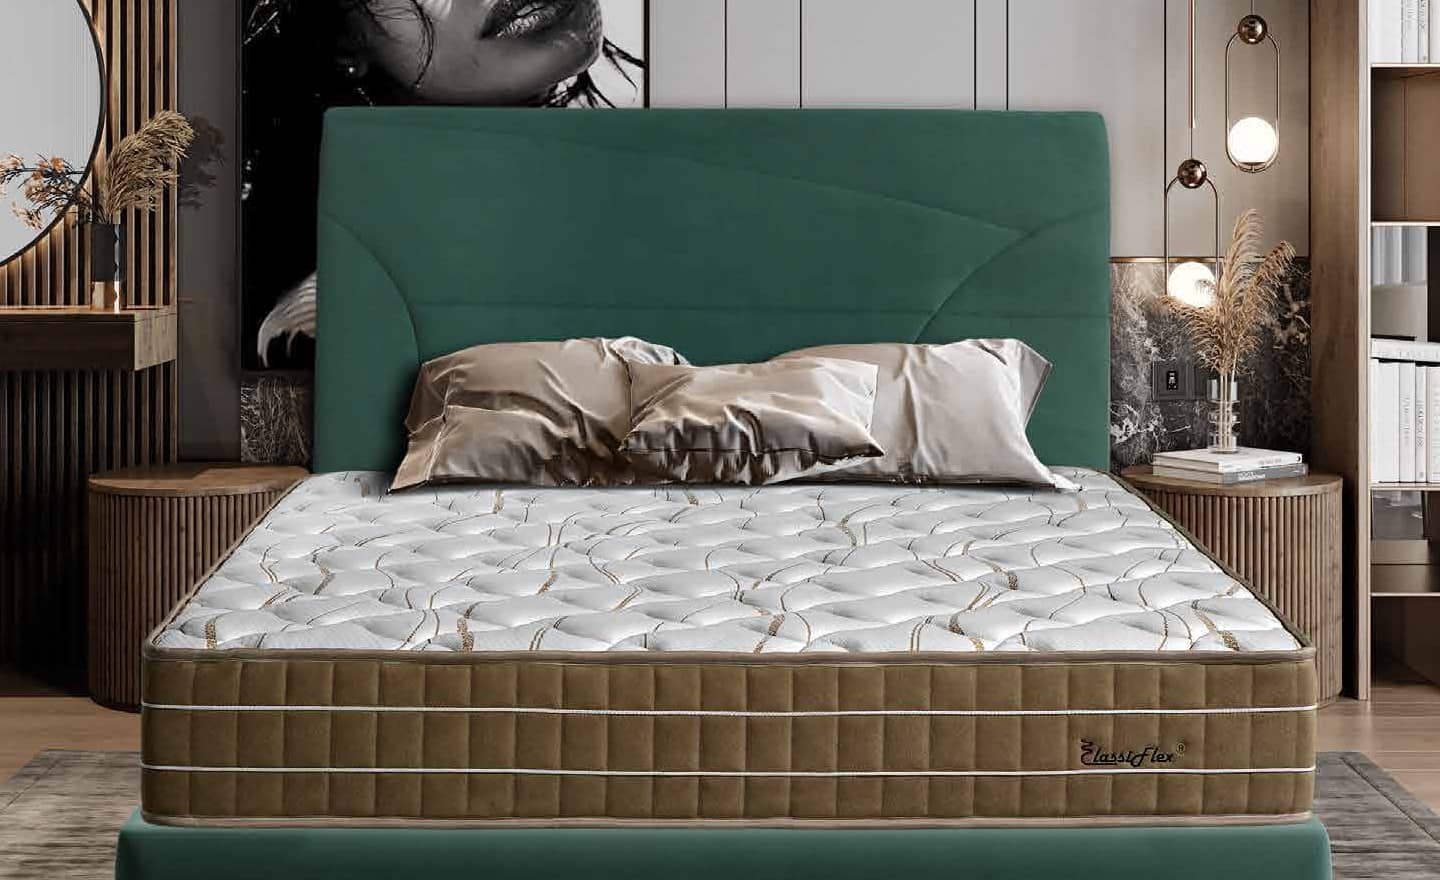 Imagem da Cabeceira Marbella da Moveistore, com design moderno e elegante, disponível em várias cores e tamanhos, com opções de estofo aveludado ou tecido.